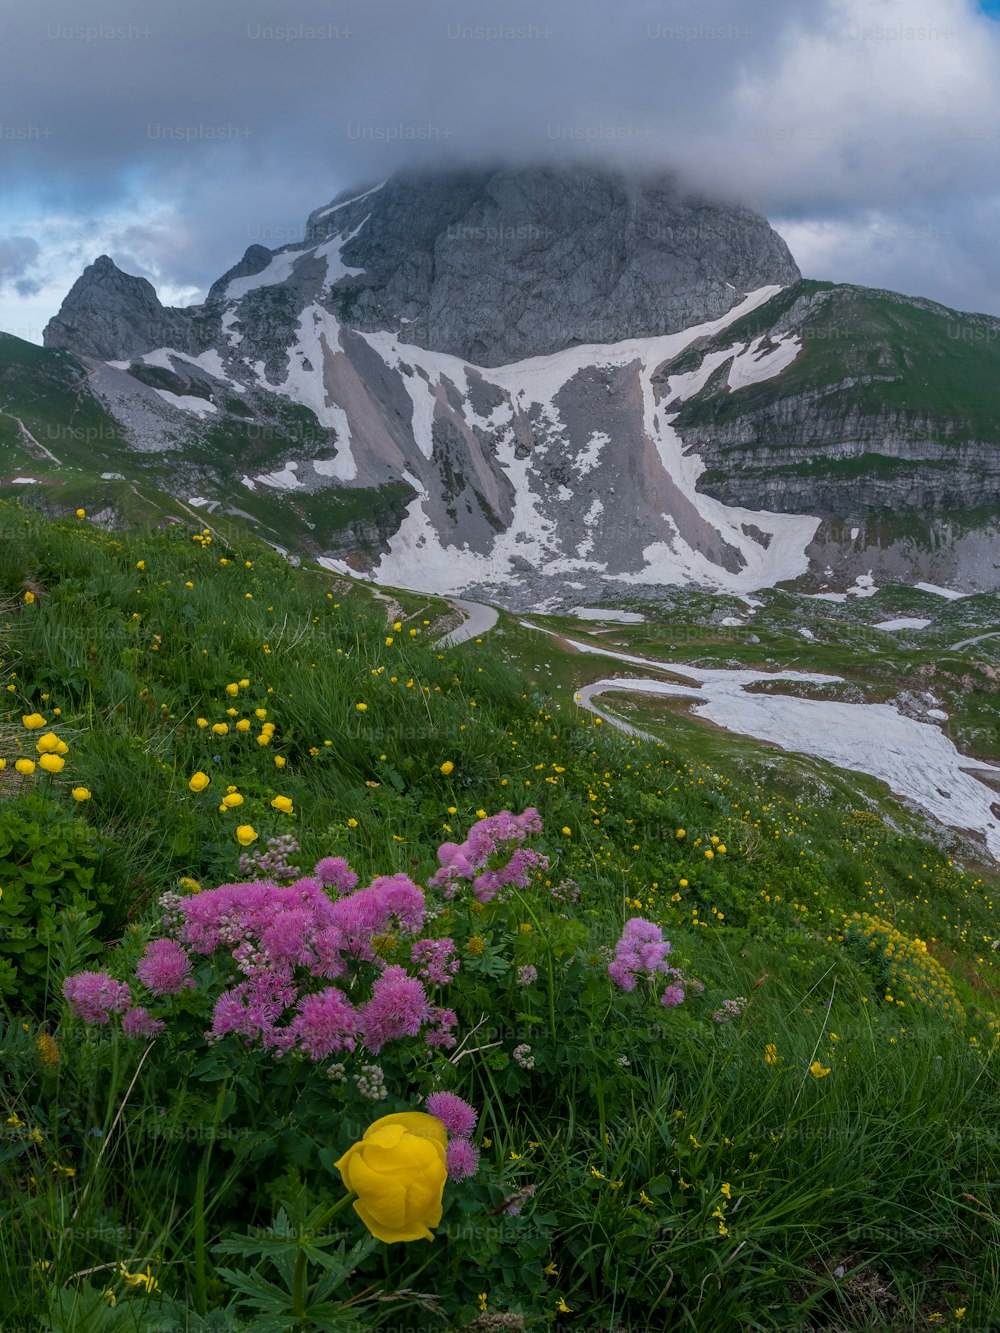 산을 배경으로 한 꽃밭